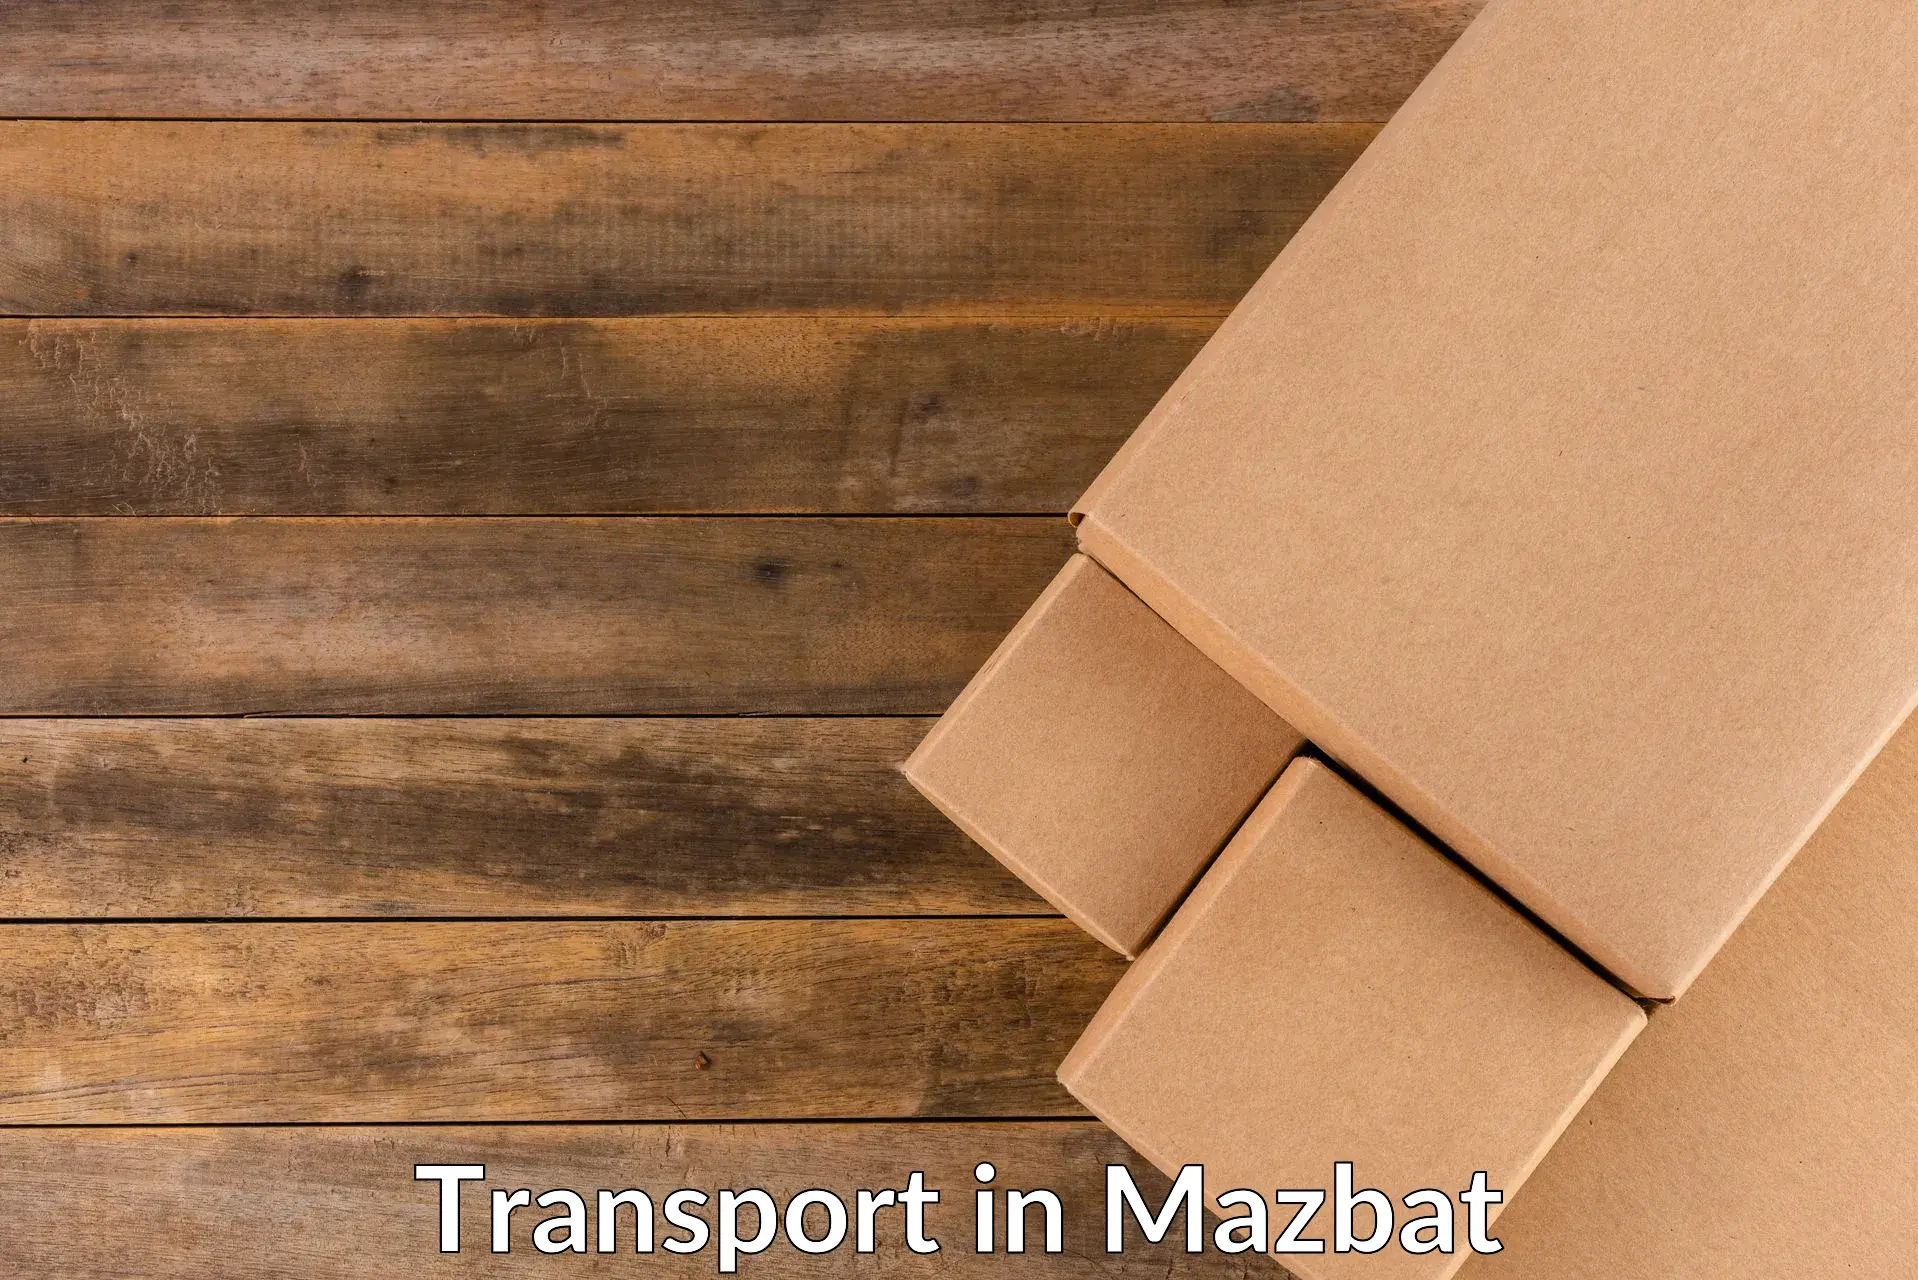 Cargo transport services in Mazbat